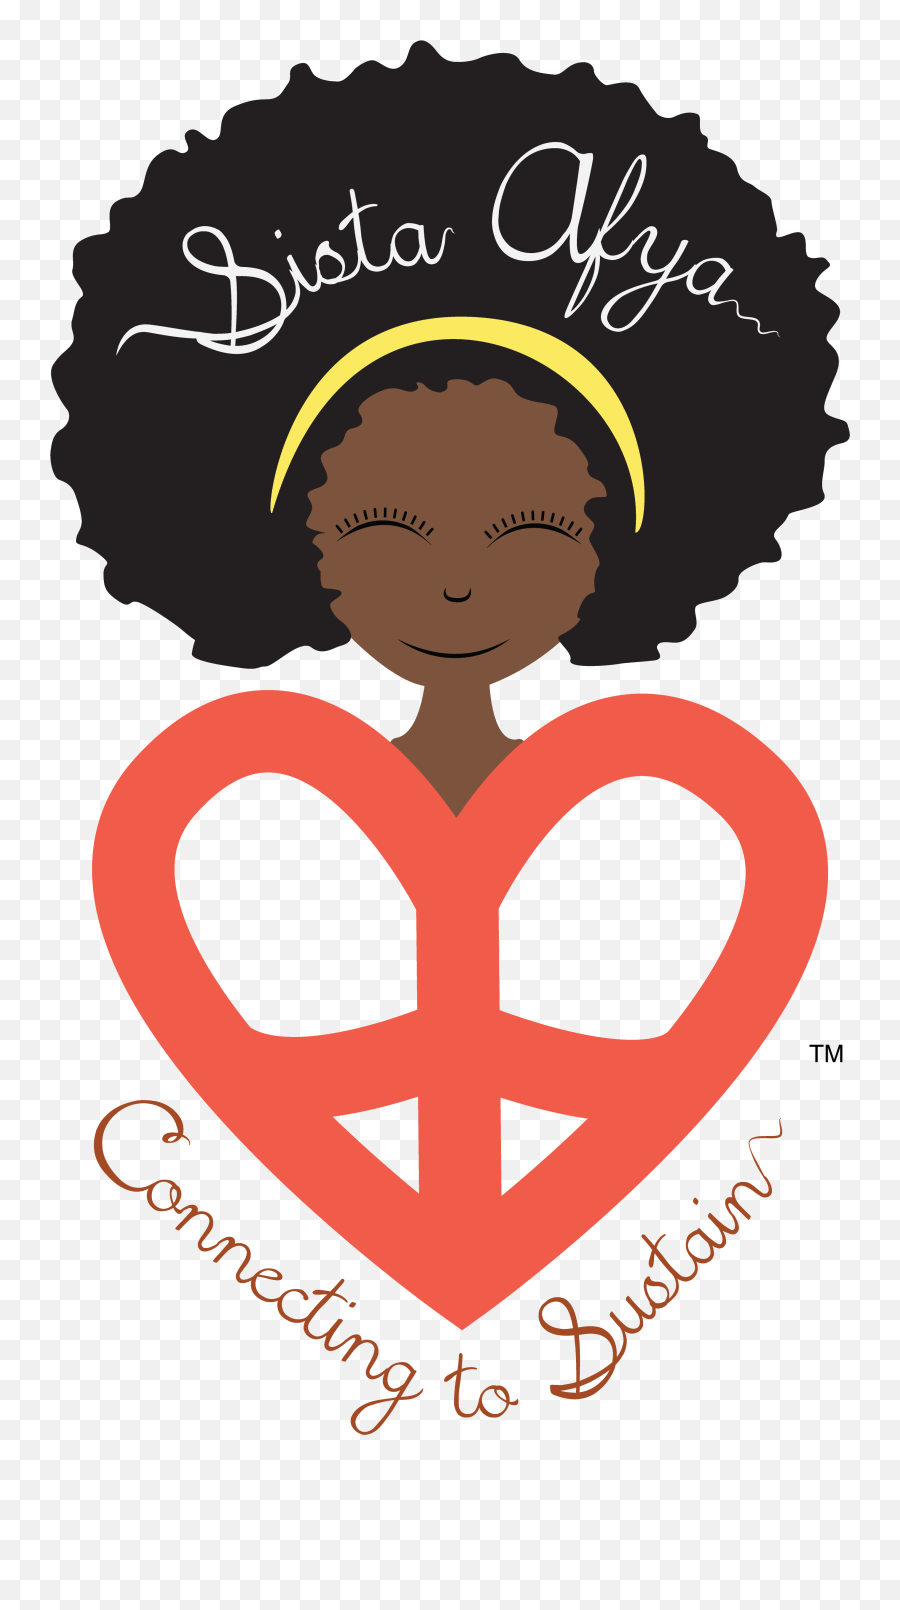 Sista Afya - Sista Afya Emoji,Afro Clipart